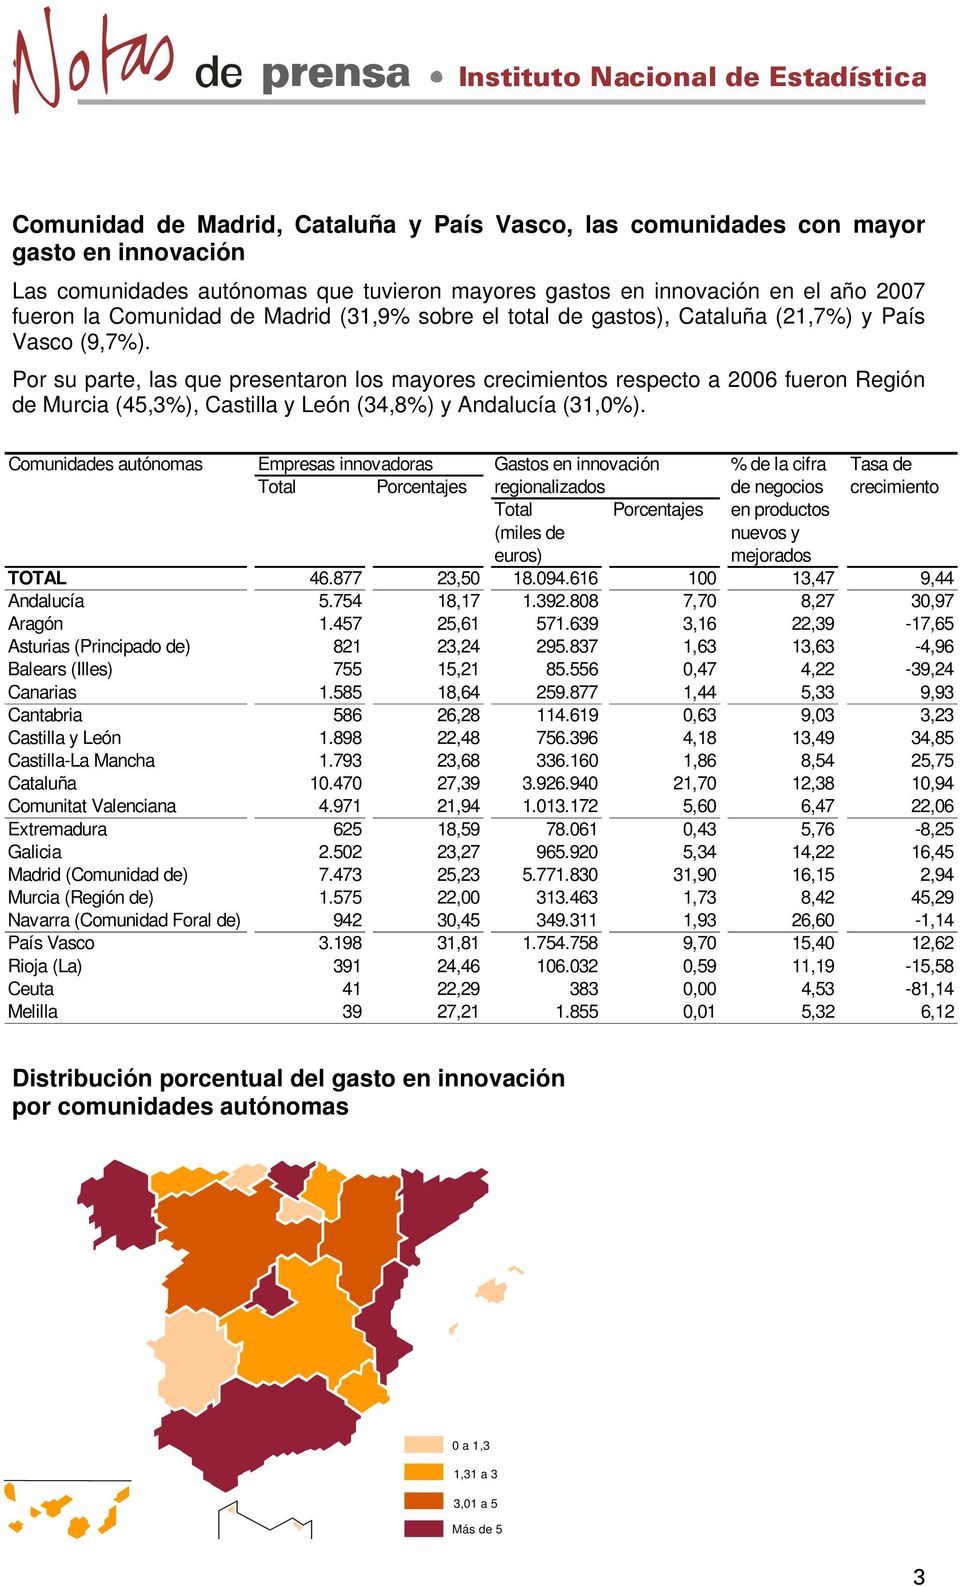 Por su parte, las que presentaron los mayores crecimientos respecto a 2006 fueron Región de Murcia (45,3%), Castilla y León (34,8%) y Andalucía (31,0%).